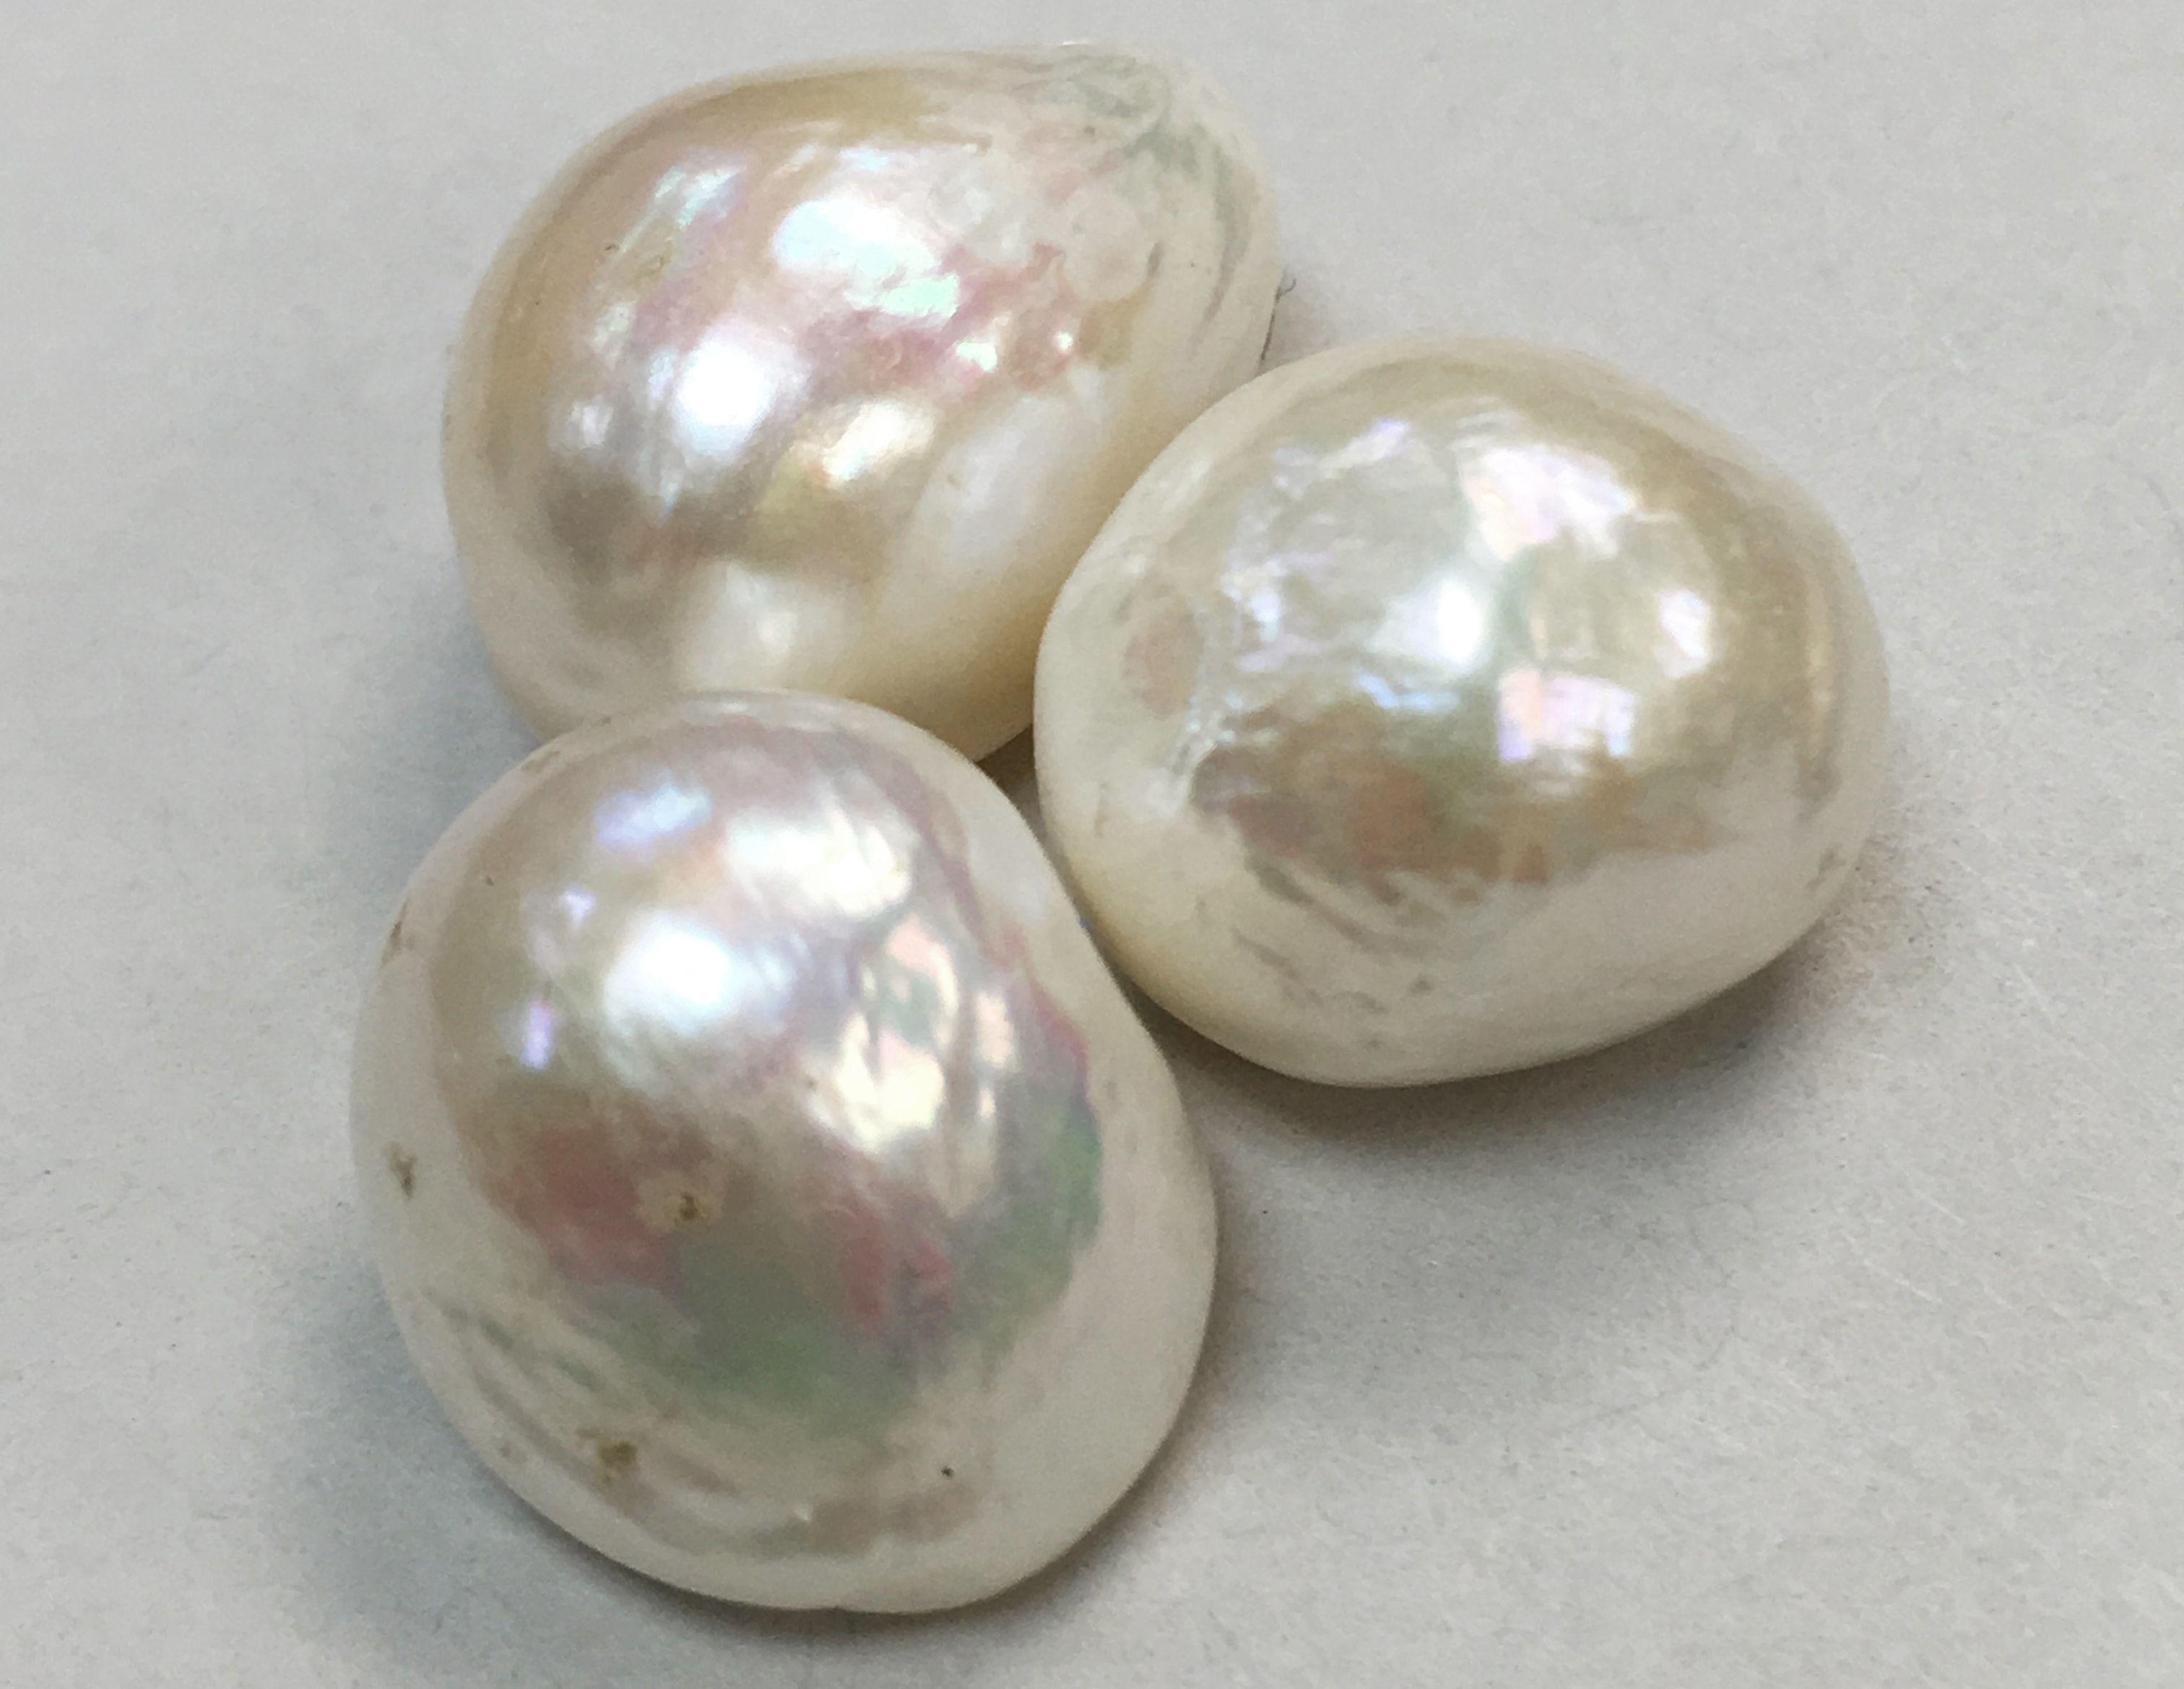 trois perles naturelles blanc rosé sur fond blanc montrant leur forme baroque pour illustrer les parles naturelles